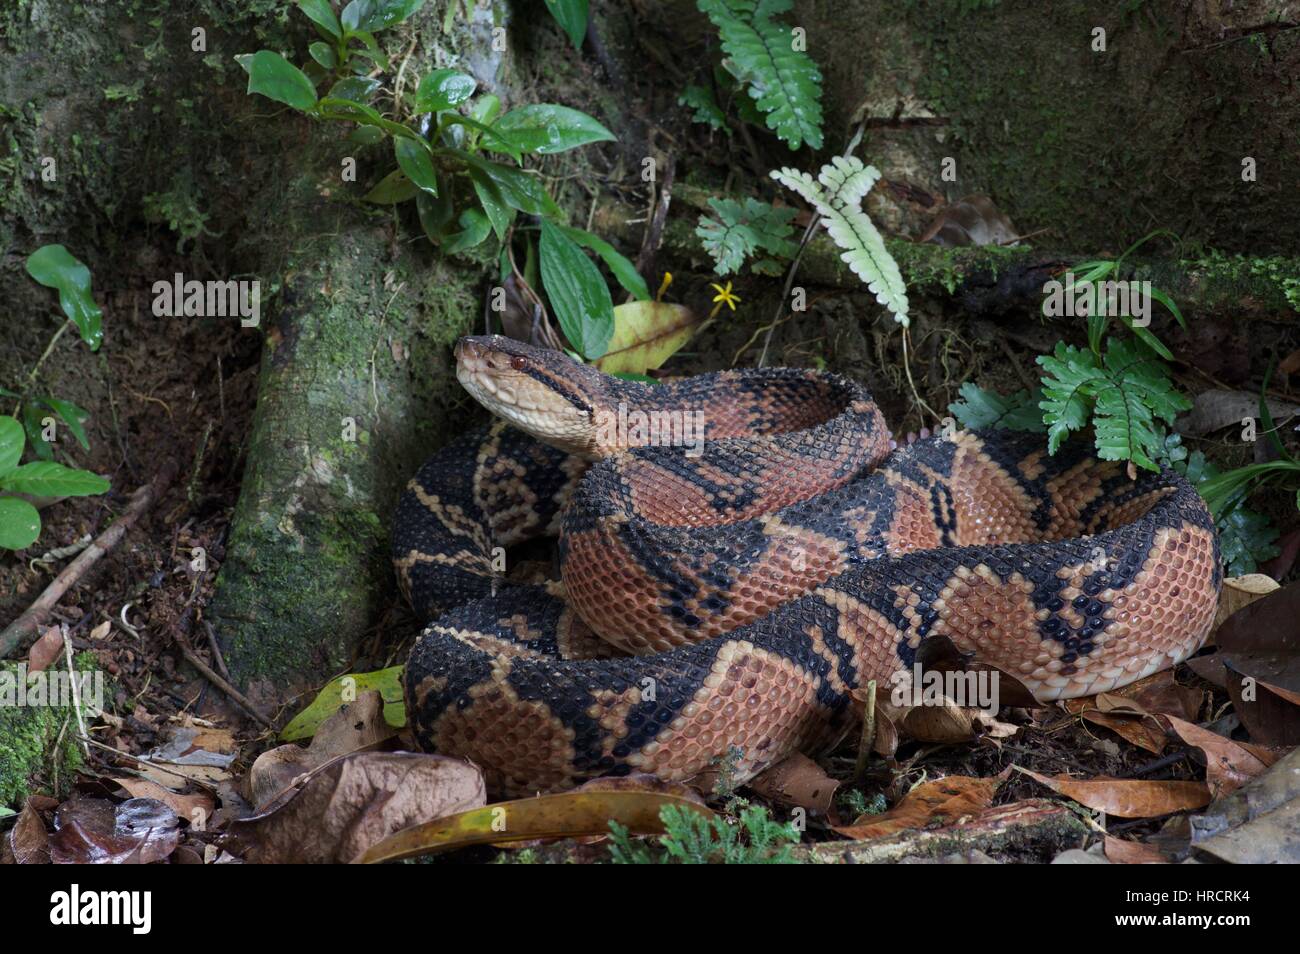 Un serpent d'Amérique du Sud Bushmaster (Lachesis muta muta) enroulé sur le sol de la forêt amazonienne à Loreto, Pérou Banque D'Images